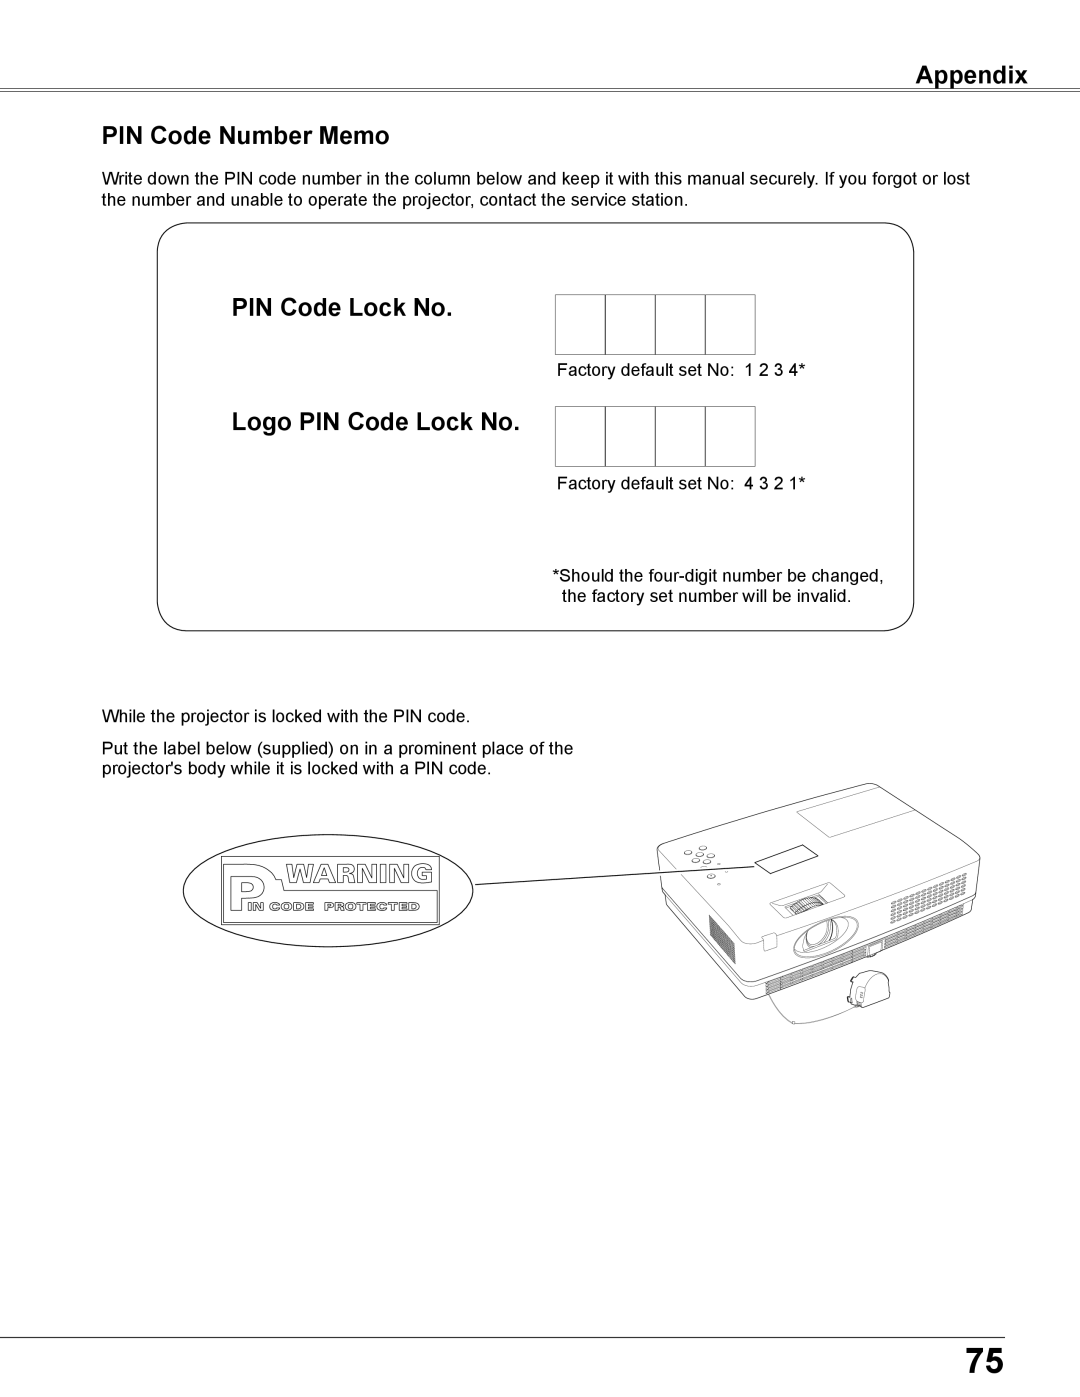 Elmo CRP-26 owner manual Appendix PIN Code Number Memo, Logo PIN Code Lock No 